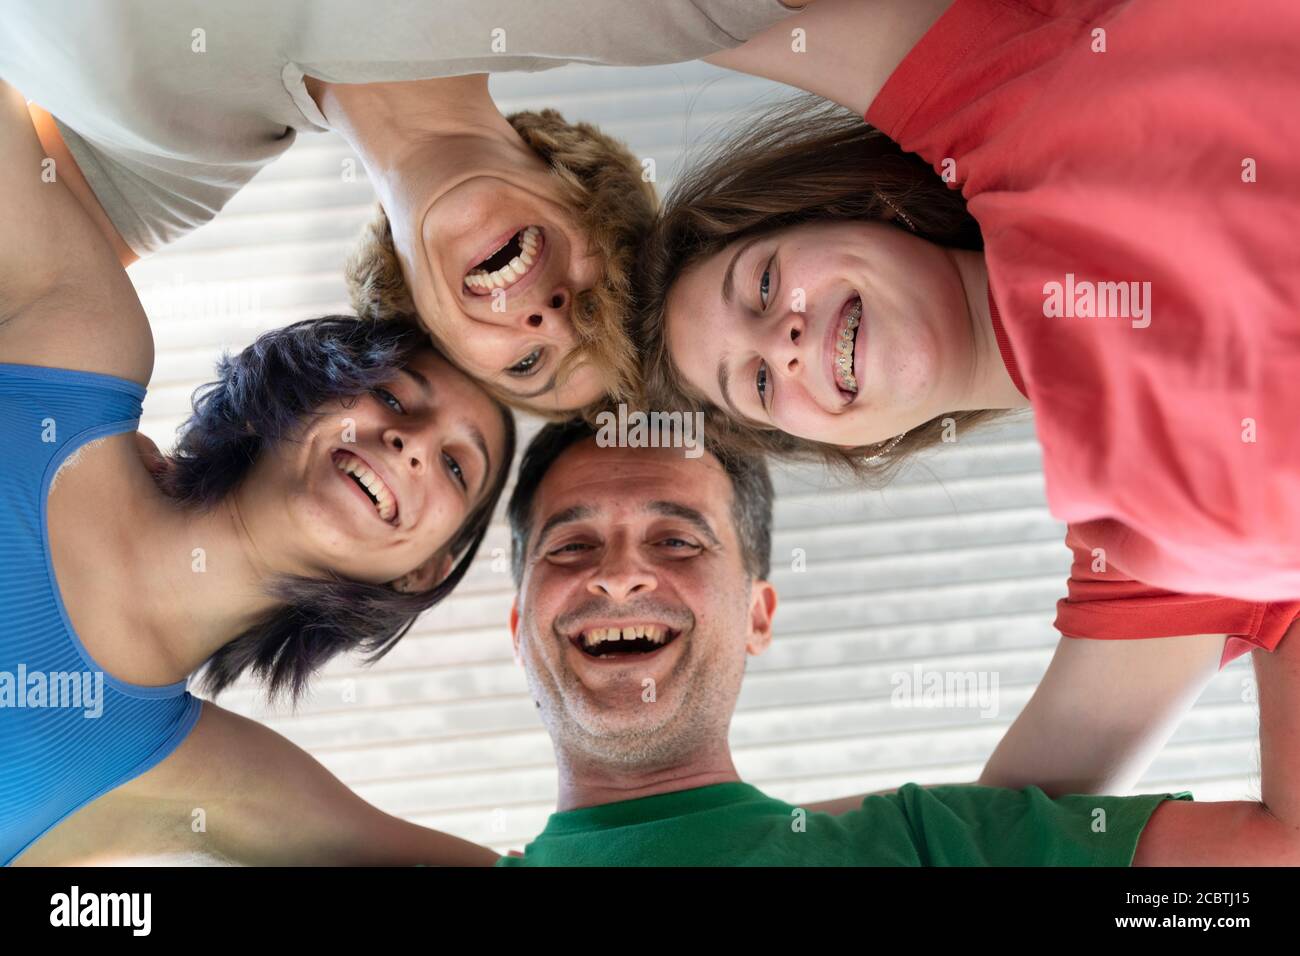 Familie lachen und Spaß zusammen haben. Low Angle Ansicht einer Familie mit ihrem Kopf bilden einen Kreis Stockfoto